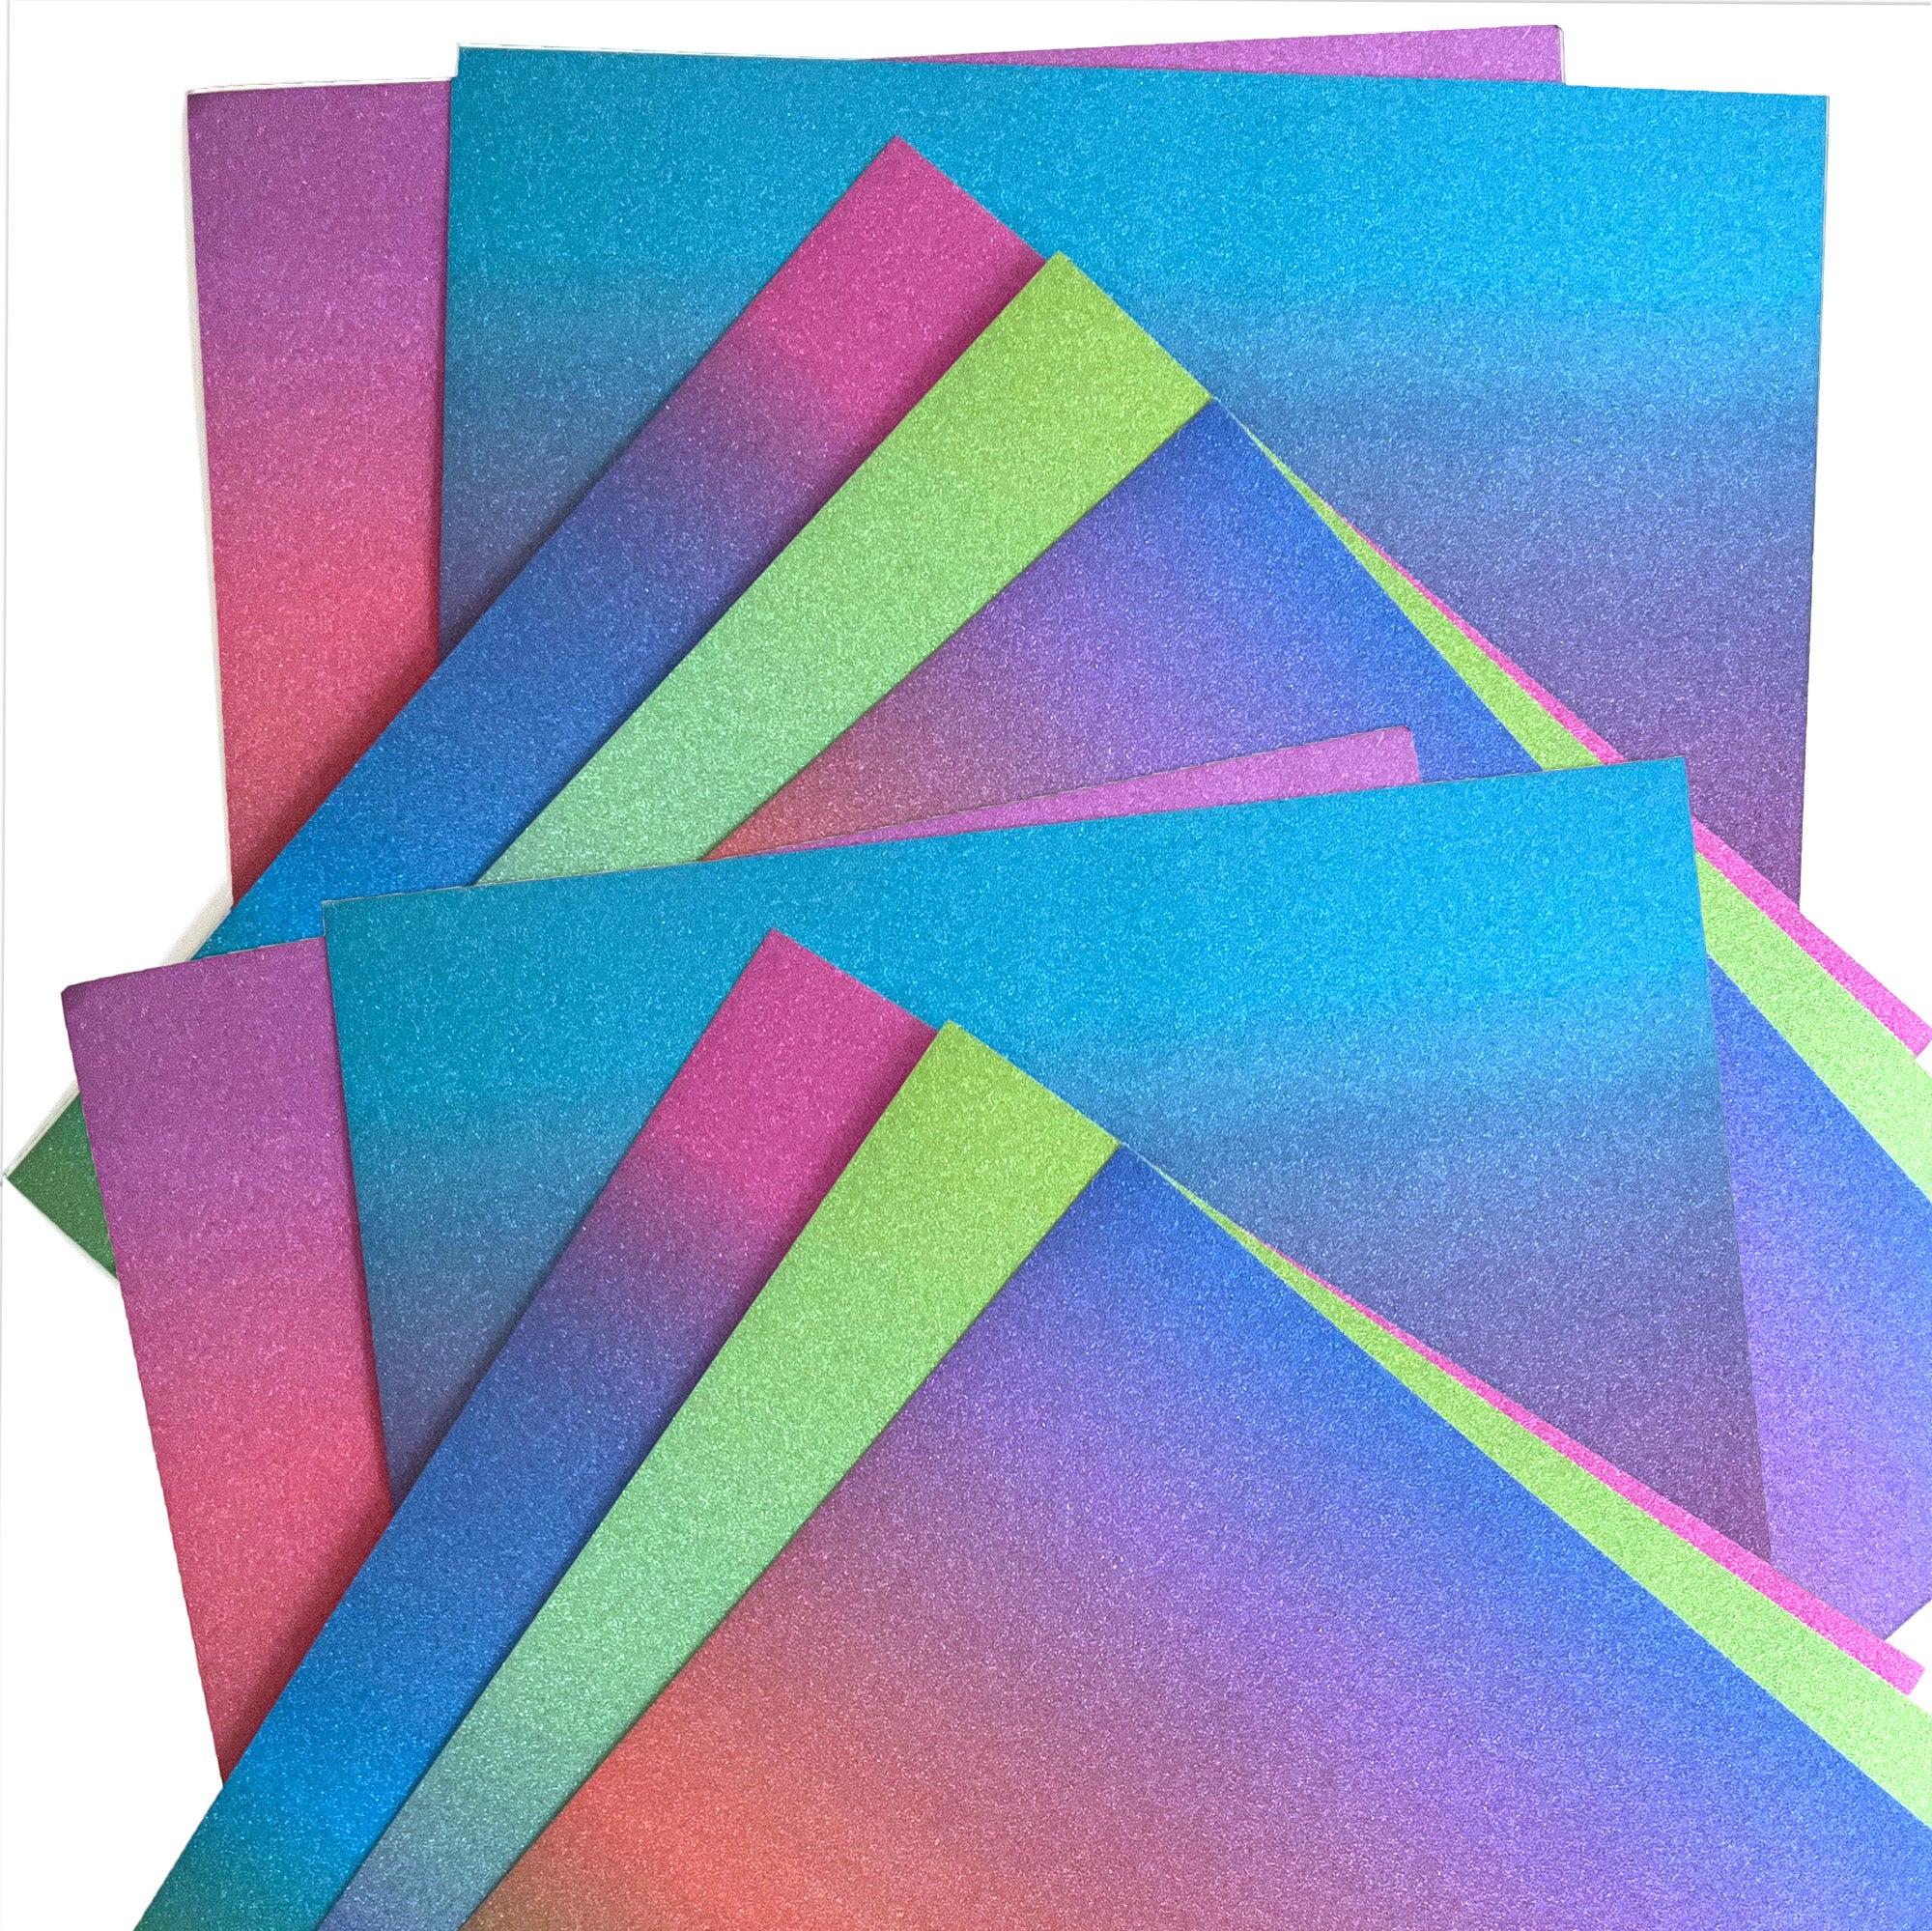 Glitter Cardstock Black 12 x 12 81# Cover Sheets Bulk Pack of 15